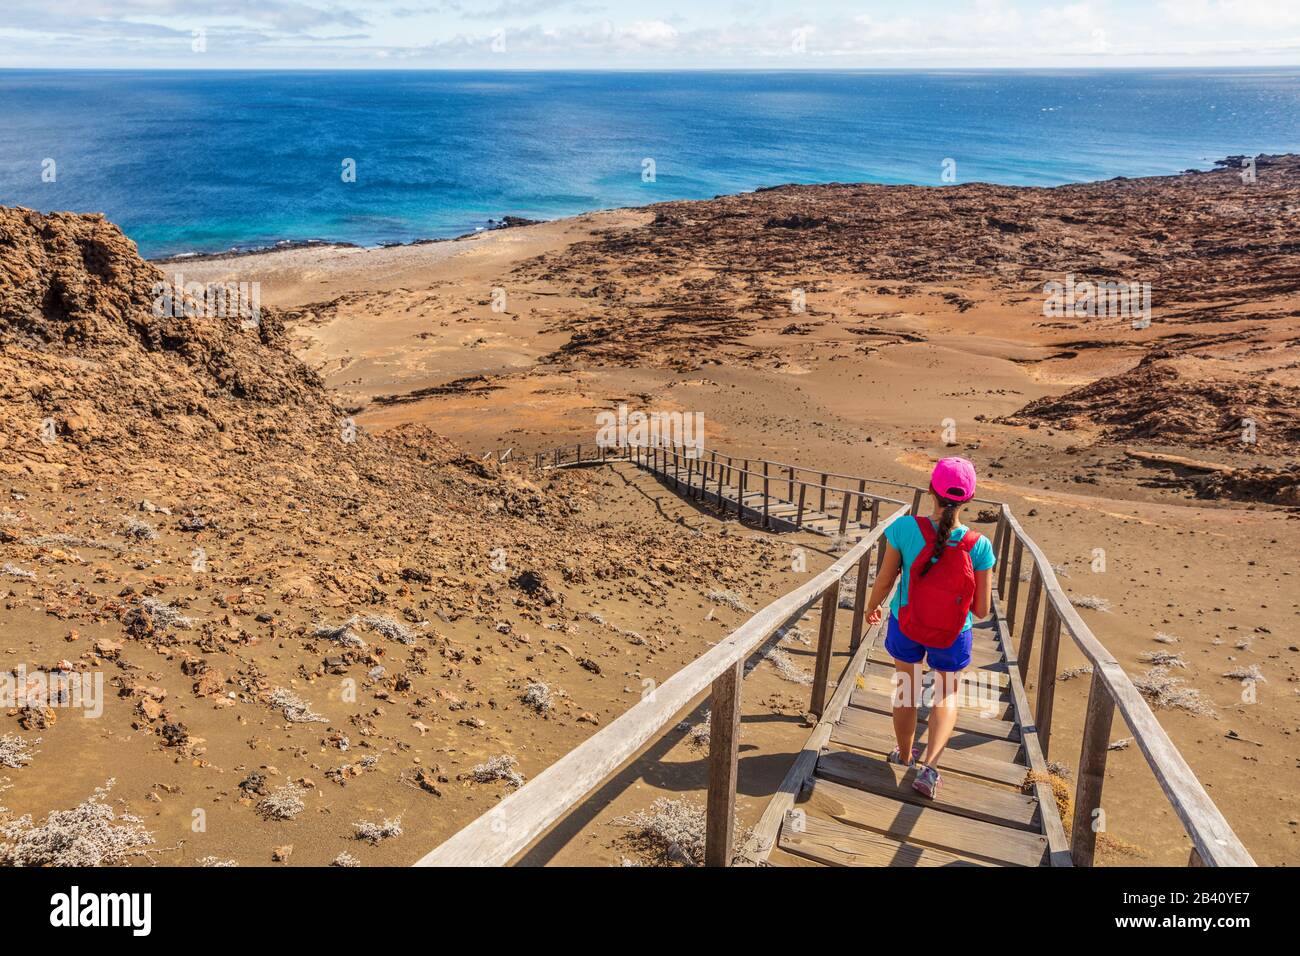 Galapagos escursioni turistiche godendo della famosa isola Bartolome. Viaggio vacanza avventura donna in escursione al punto panoramico e sito visitatore di paesaggio. Foto Stock